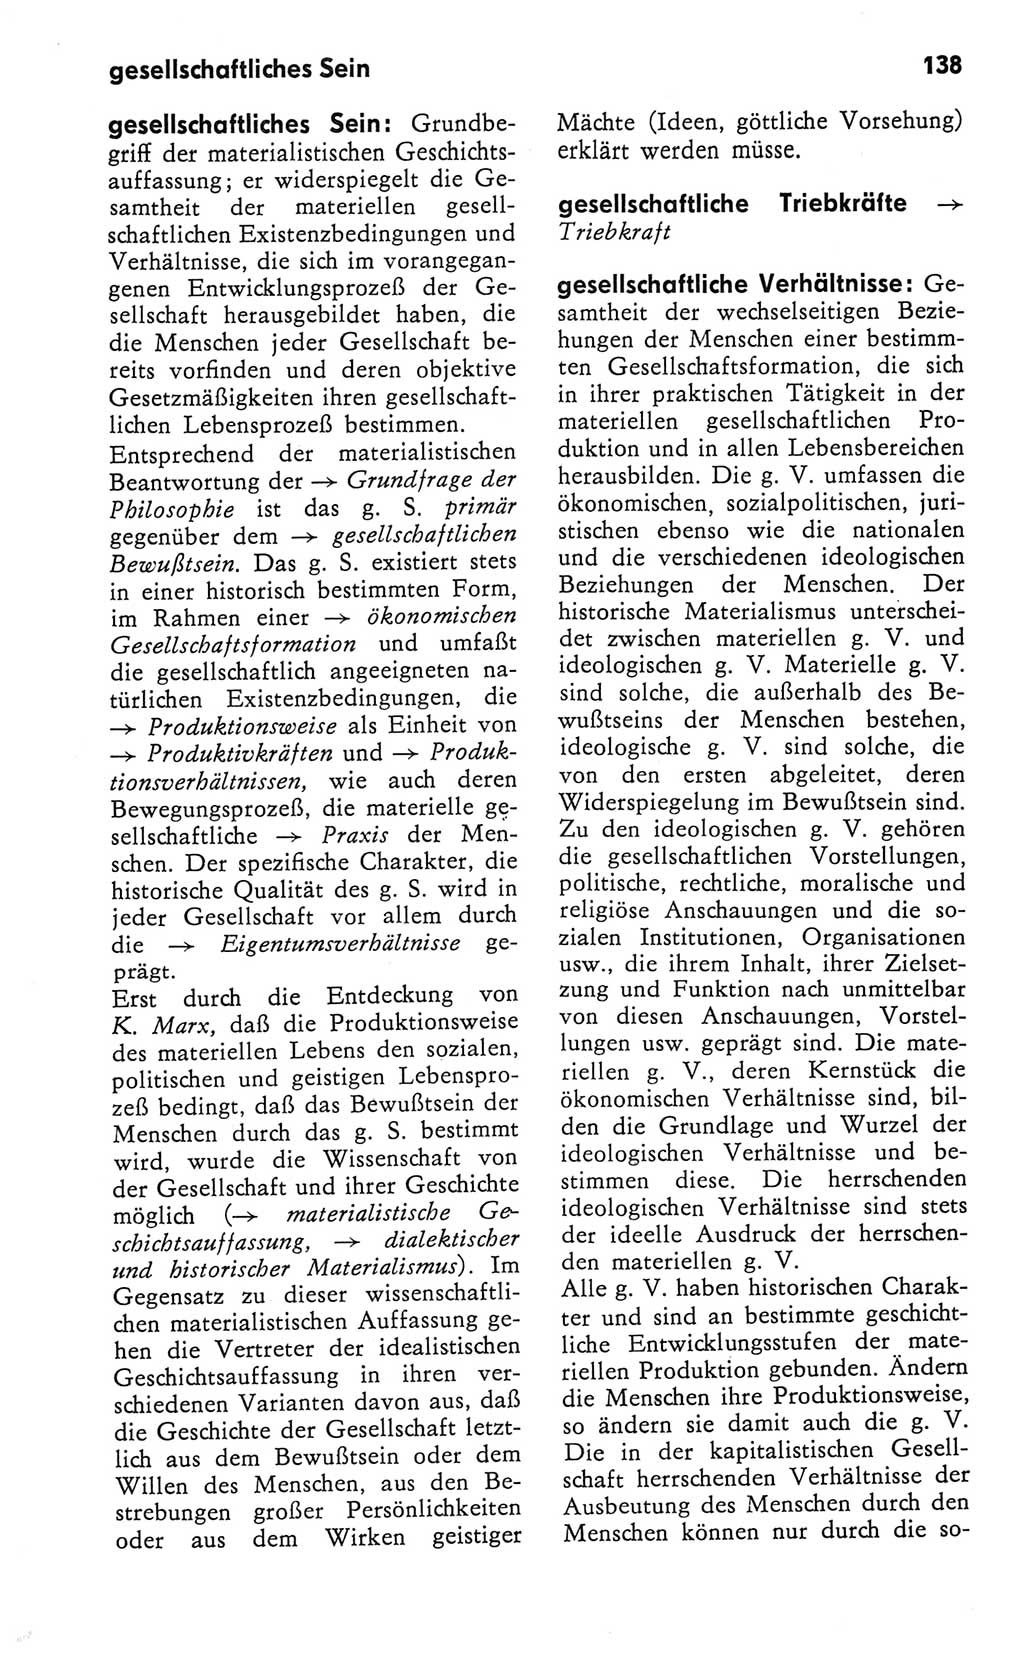 Kleines Wörterbuch der marxistisch-leninistischen Philosophie [Deutsche Demokratische Republik (DDR)] 1982, Seite 138 (Kl. Wb. ML Phil. DDR 1982, S. 138)